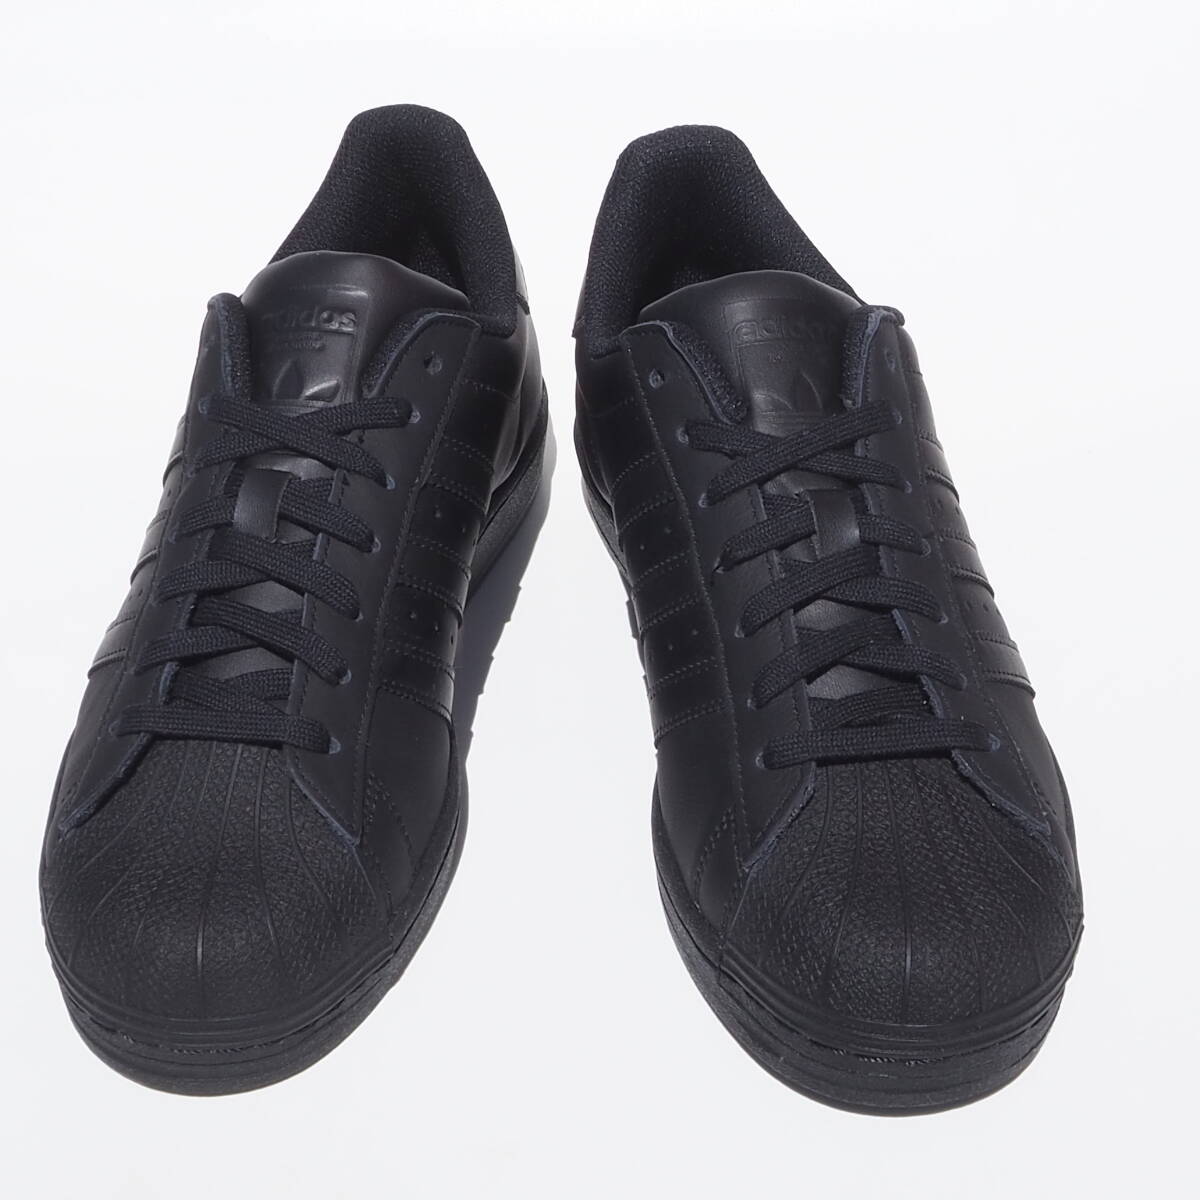 デッド!! 新品 US 9 / 27cm 限定カラー 23年 adidas スーパースター 黒黒 トリプルブラック 天然皮革 レザーの画像3